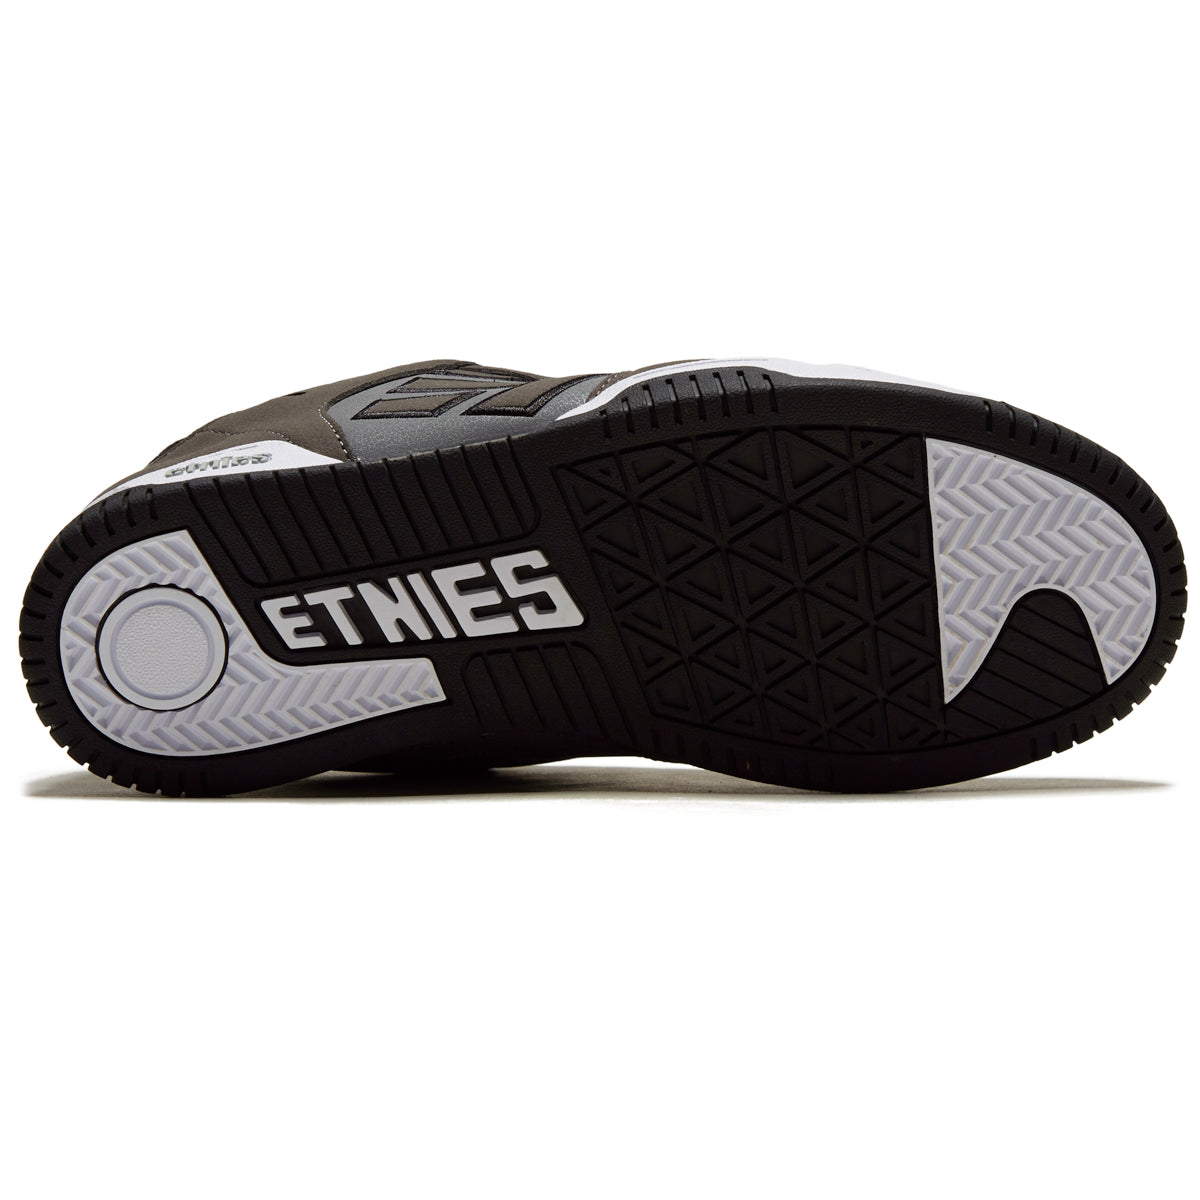 Etnies Faze Shoes - Grey/Black image 4